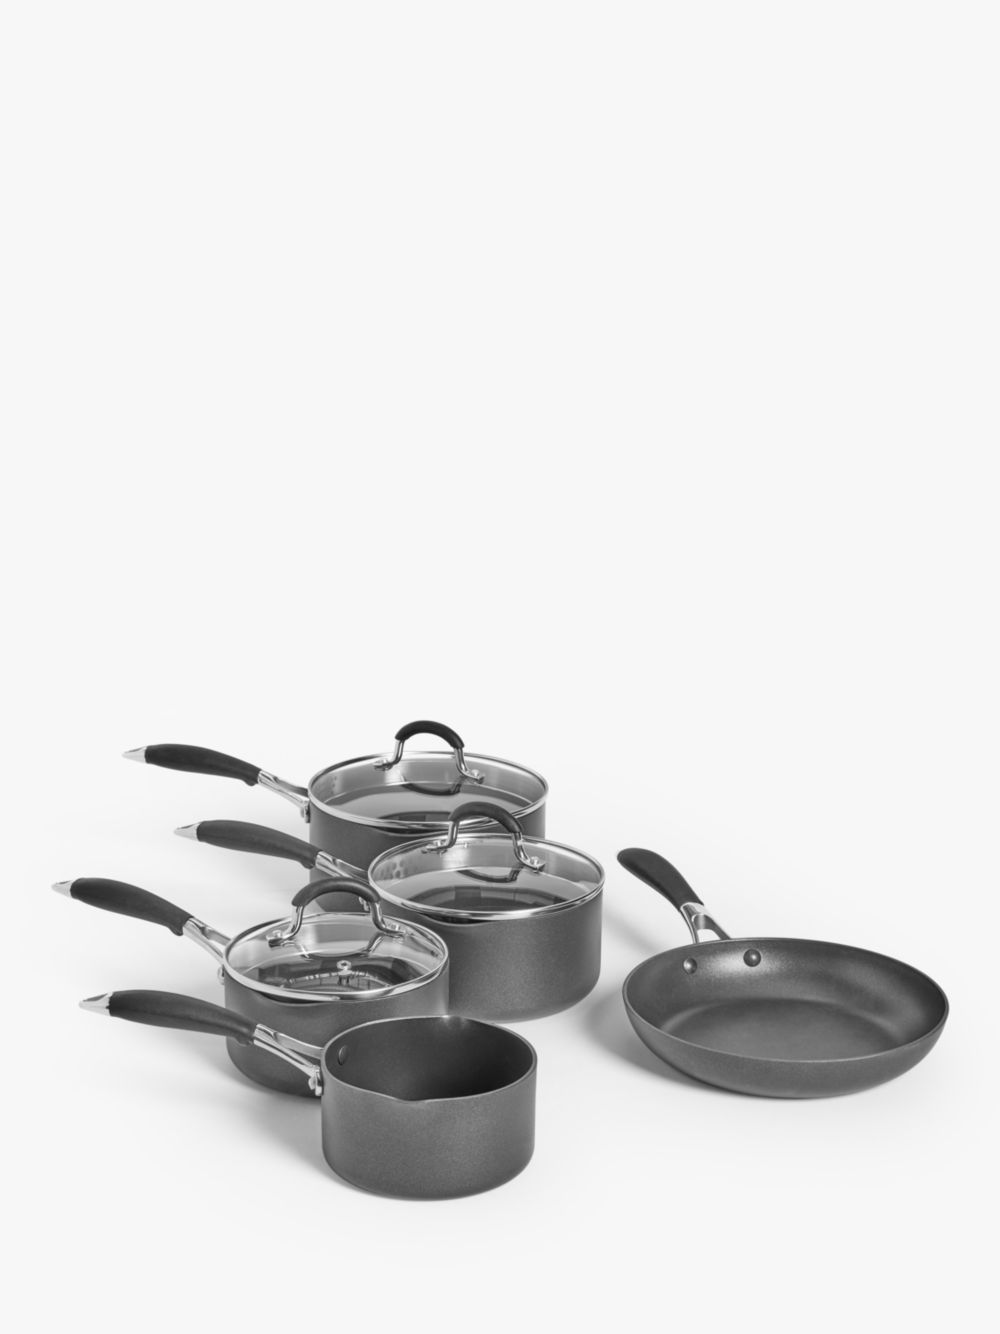 Набор алюминиевых сковородок с антипригарным покрытием John Lewis The Pan, 5 предметов